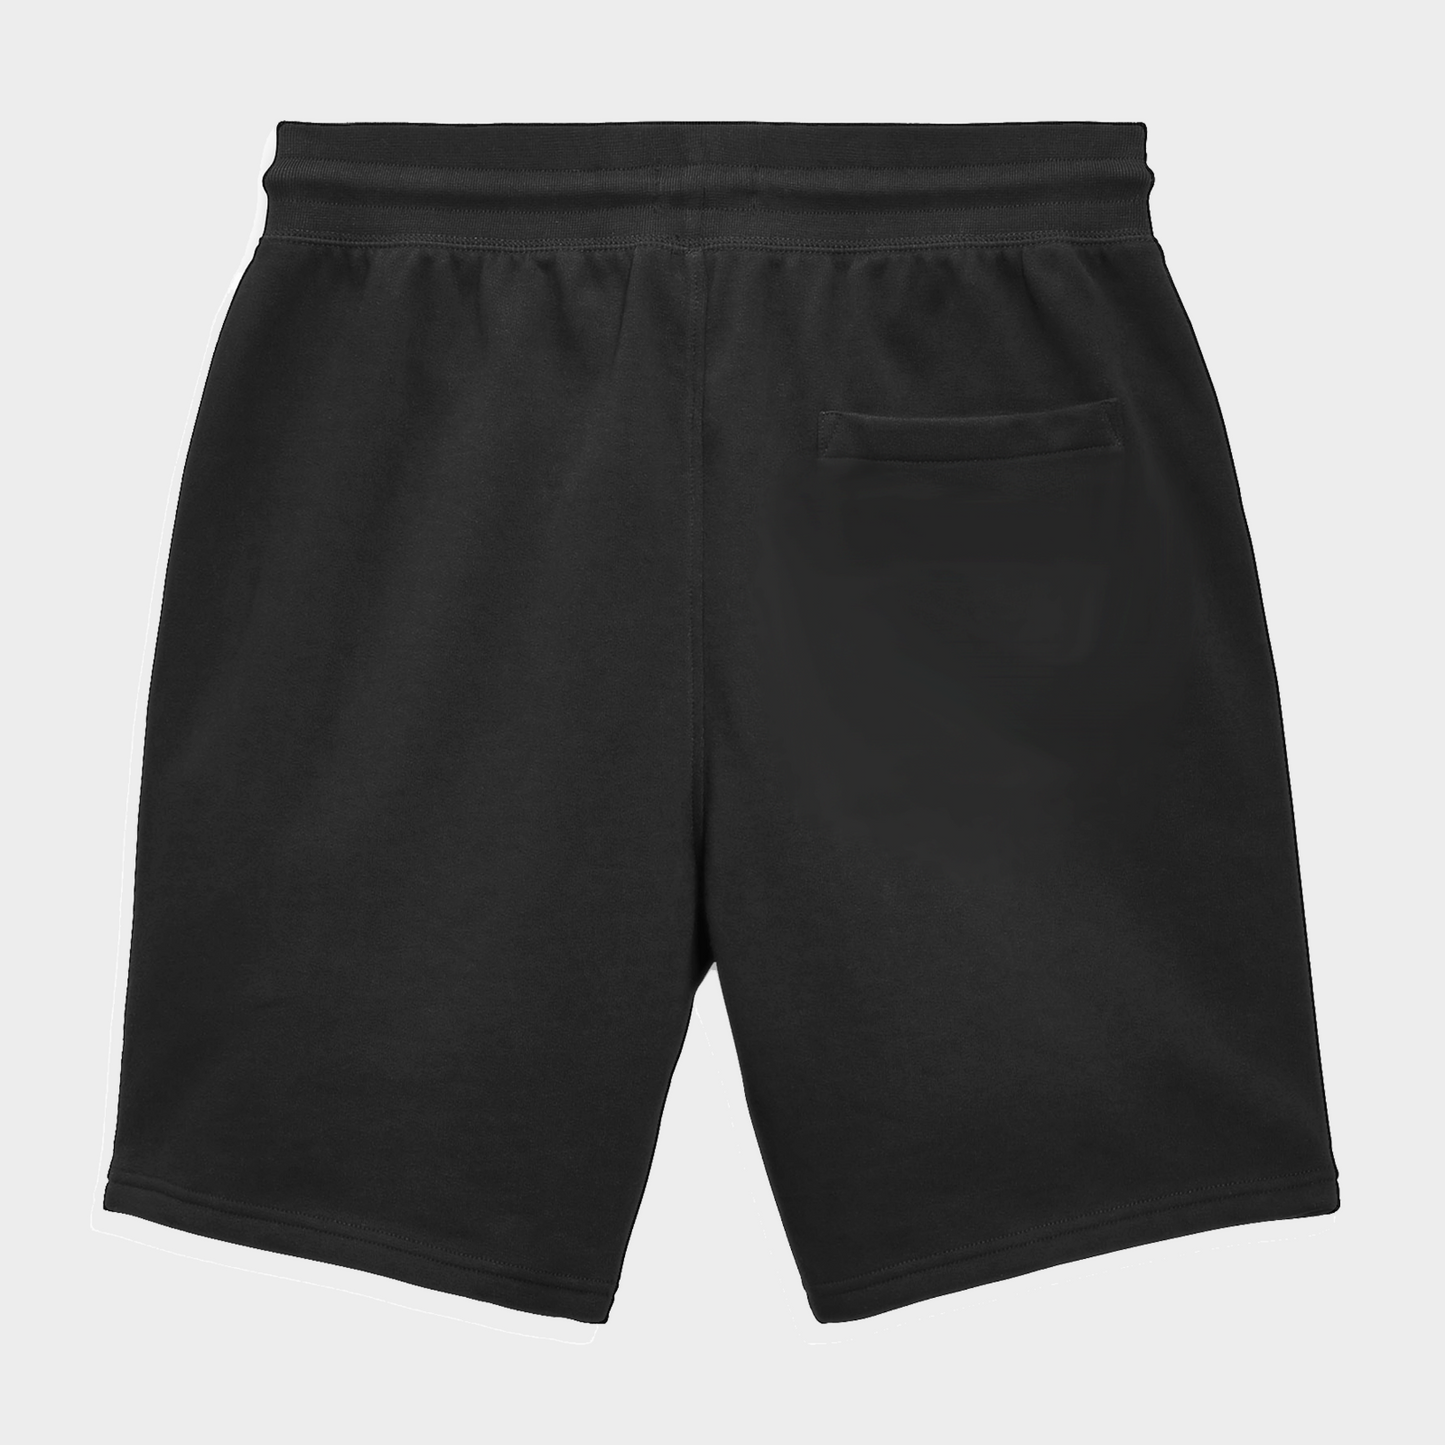 Mens Summer Shorts Casual Fleece Short